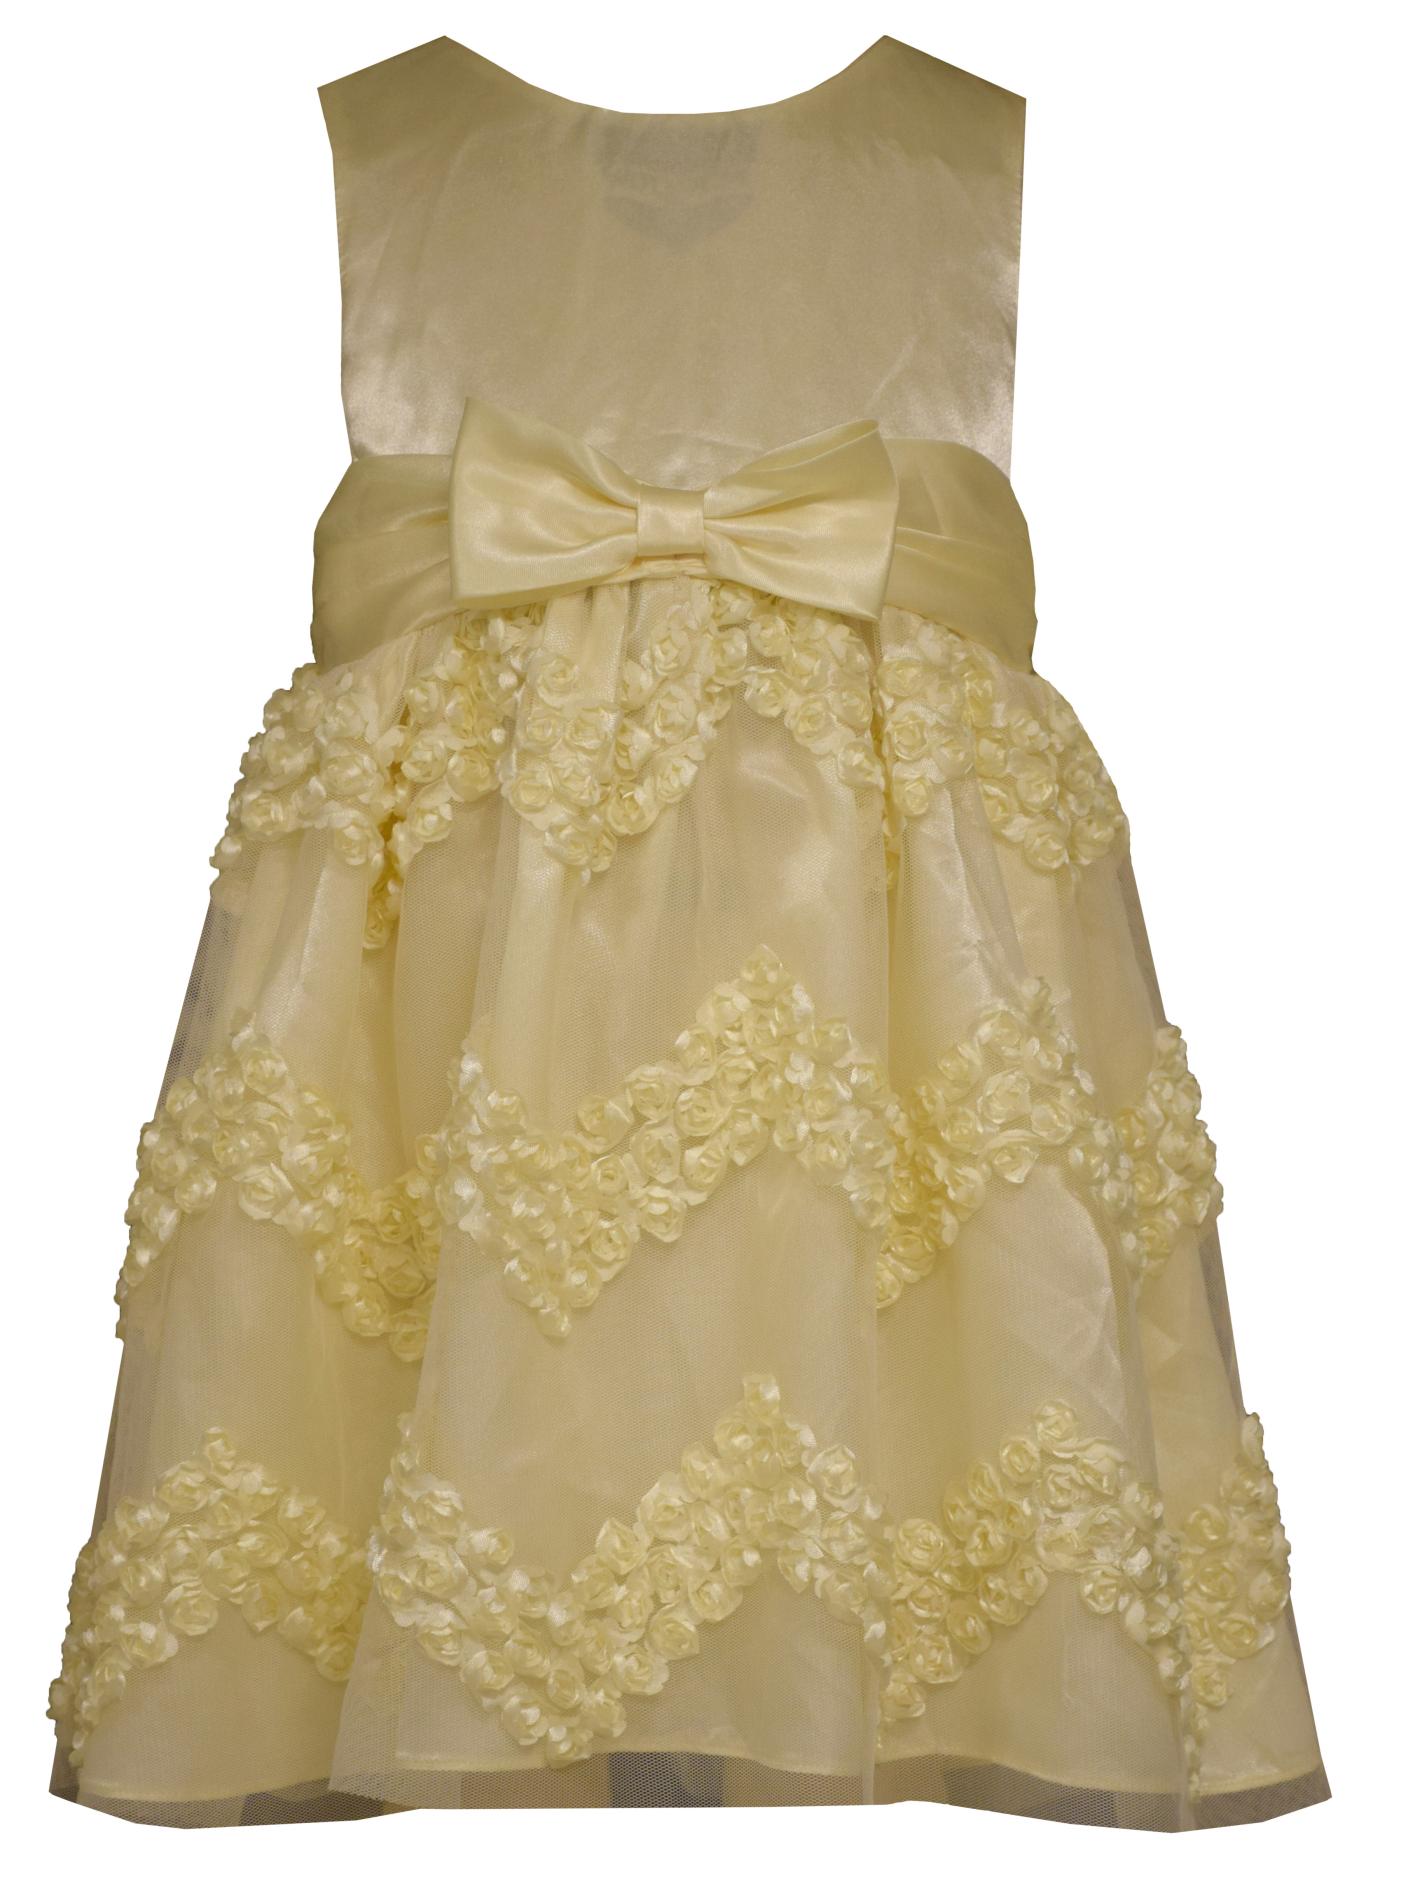 Ashley Ann Infant & Toddler Girl's Occasion Dress - Chevron